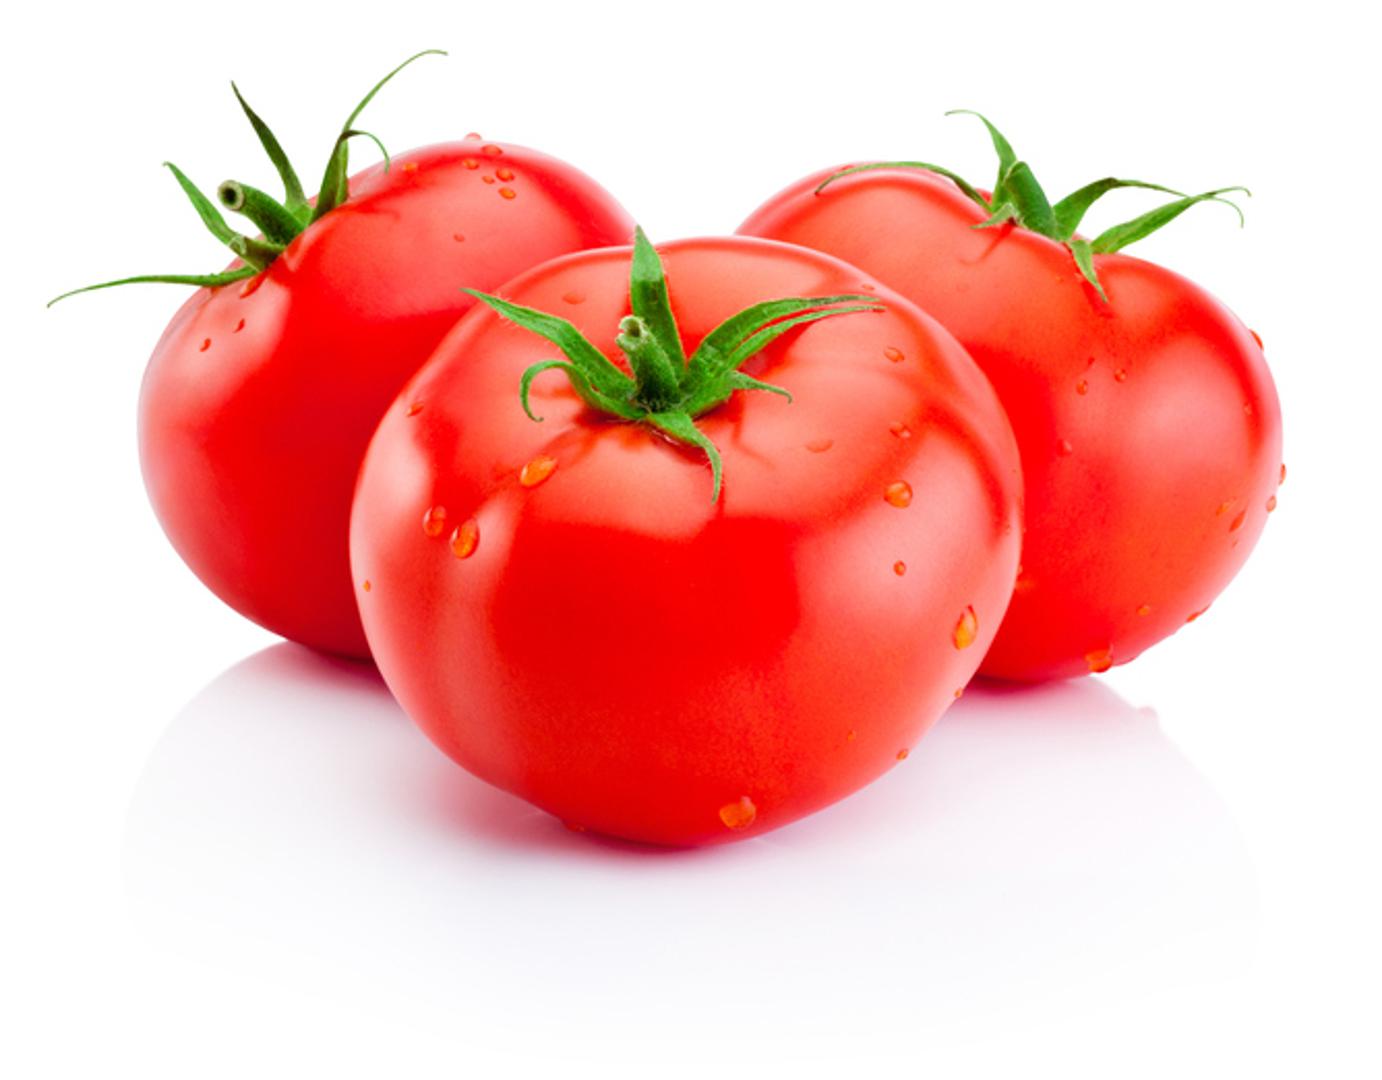 7. RAJČICE - Likopen, fitonutrijent koji čini rajčice crvenima, pomaže u uklanjanju znakova starenja kože prouzročenih ultraljubičastim zrakama. Tijelo dobiva najviše hranjivih sastojaka kada je povrće zagrijano. Samo pola šalice kuhane rajčice ili umaka za tjesteninu ima 16 miligrama likopena.